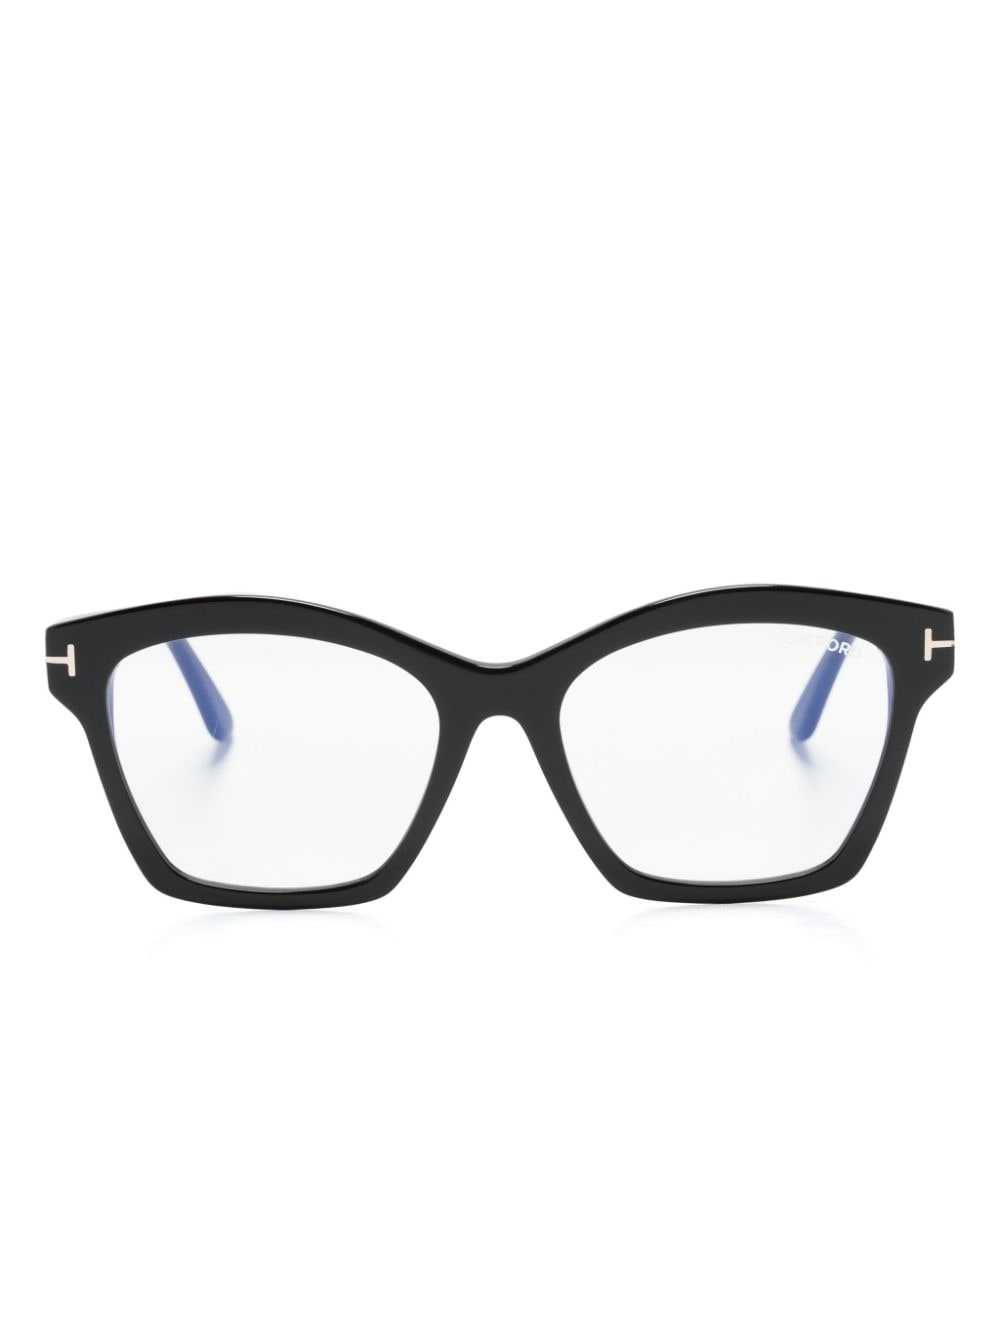 Tom Ford Light-filtering Butterfly-frame Glasses In Black